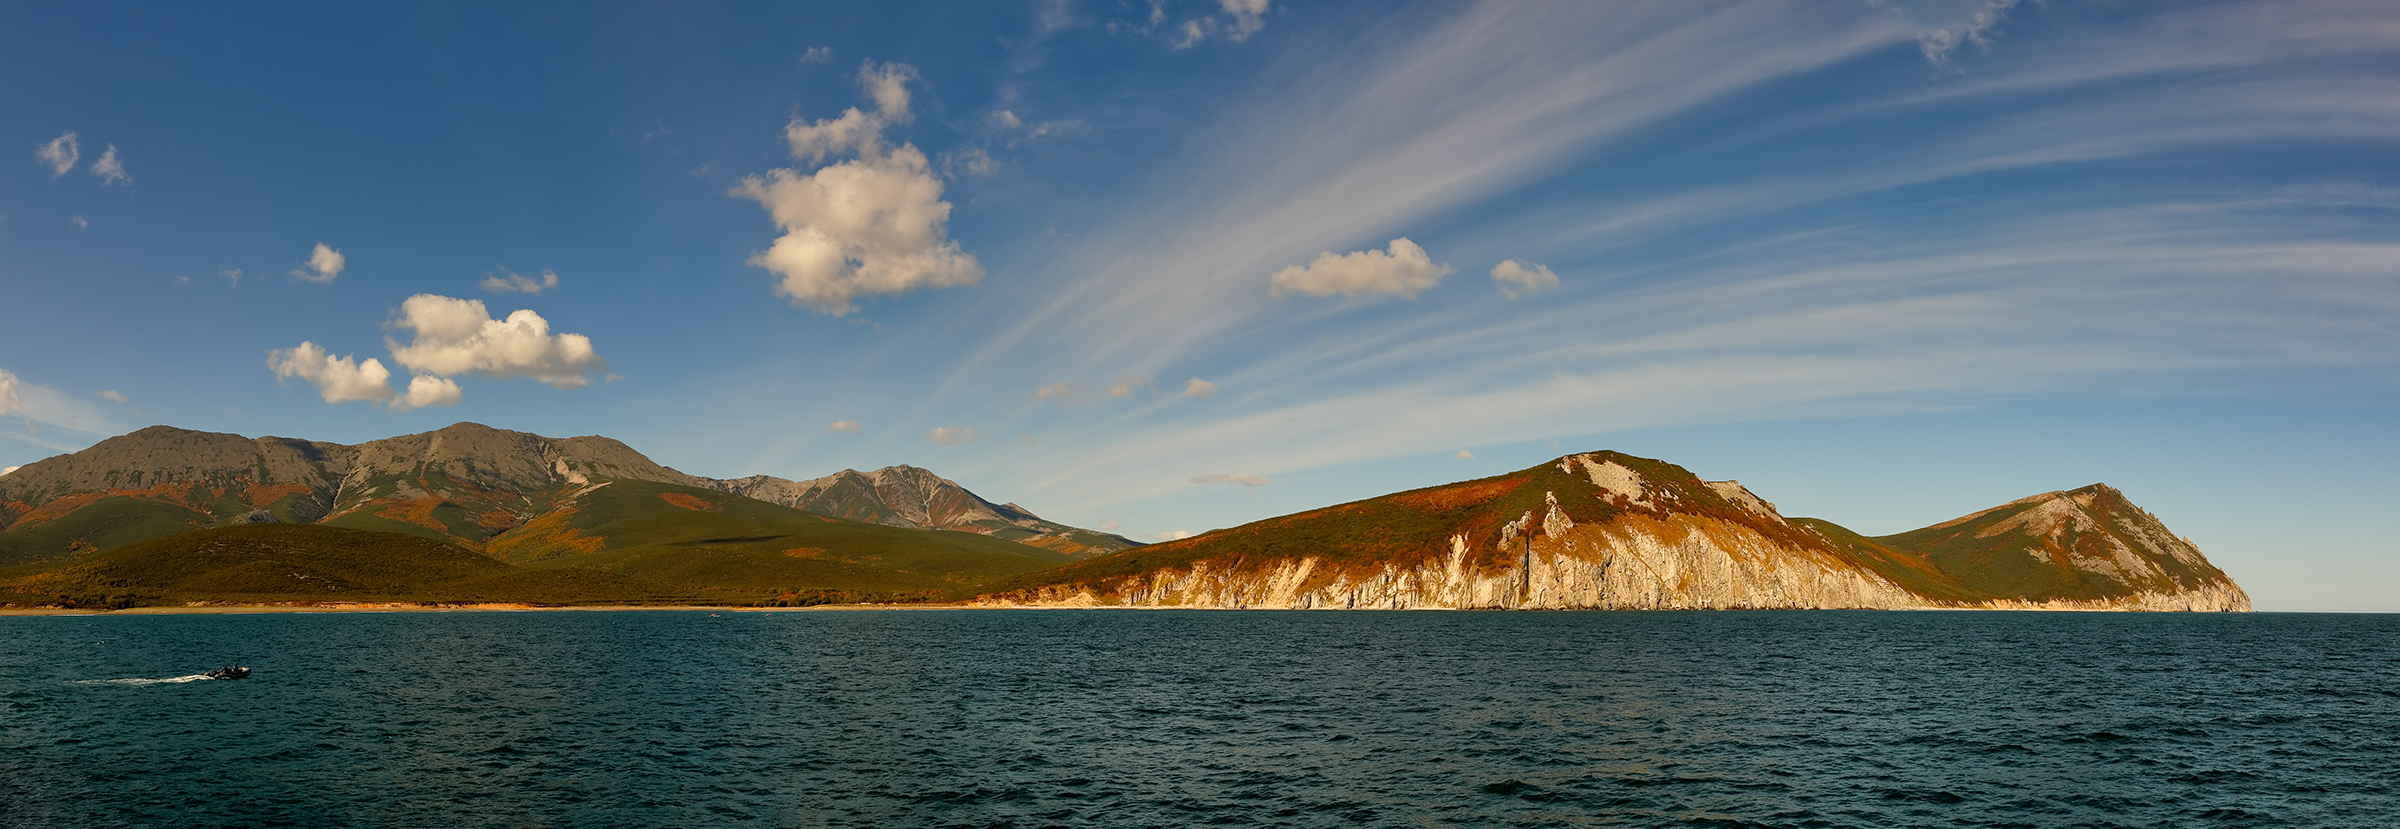 берег, камчатка, облака, осень, скалы, резиновая лодка, Евгений Паршуков